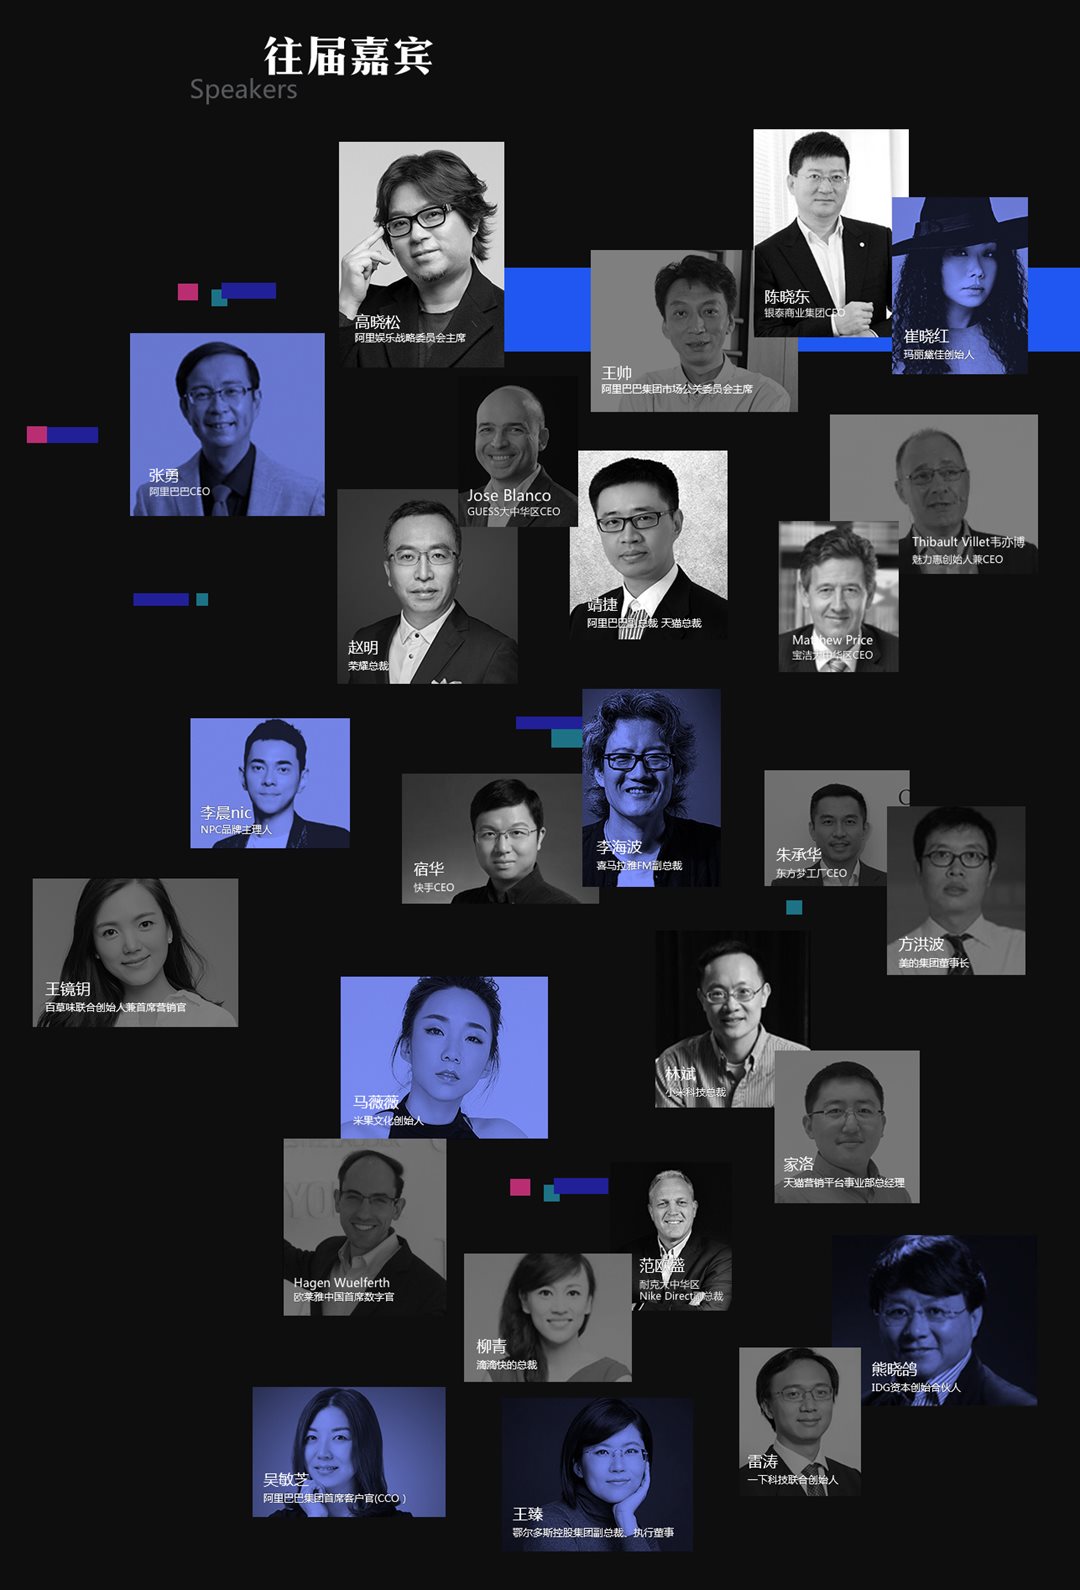 2018新网商峰会（杭州）